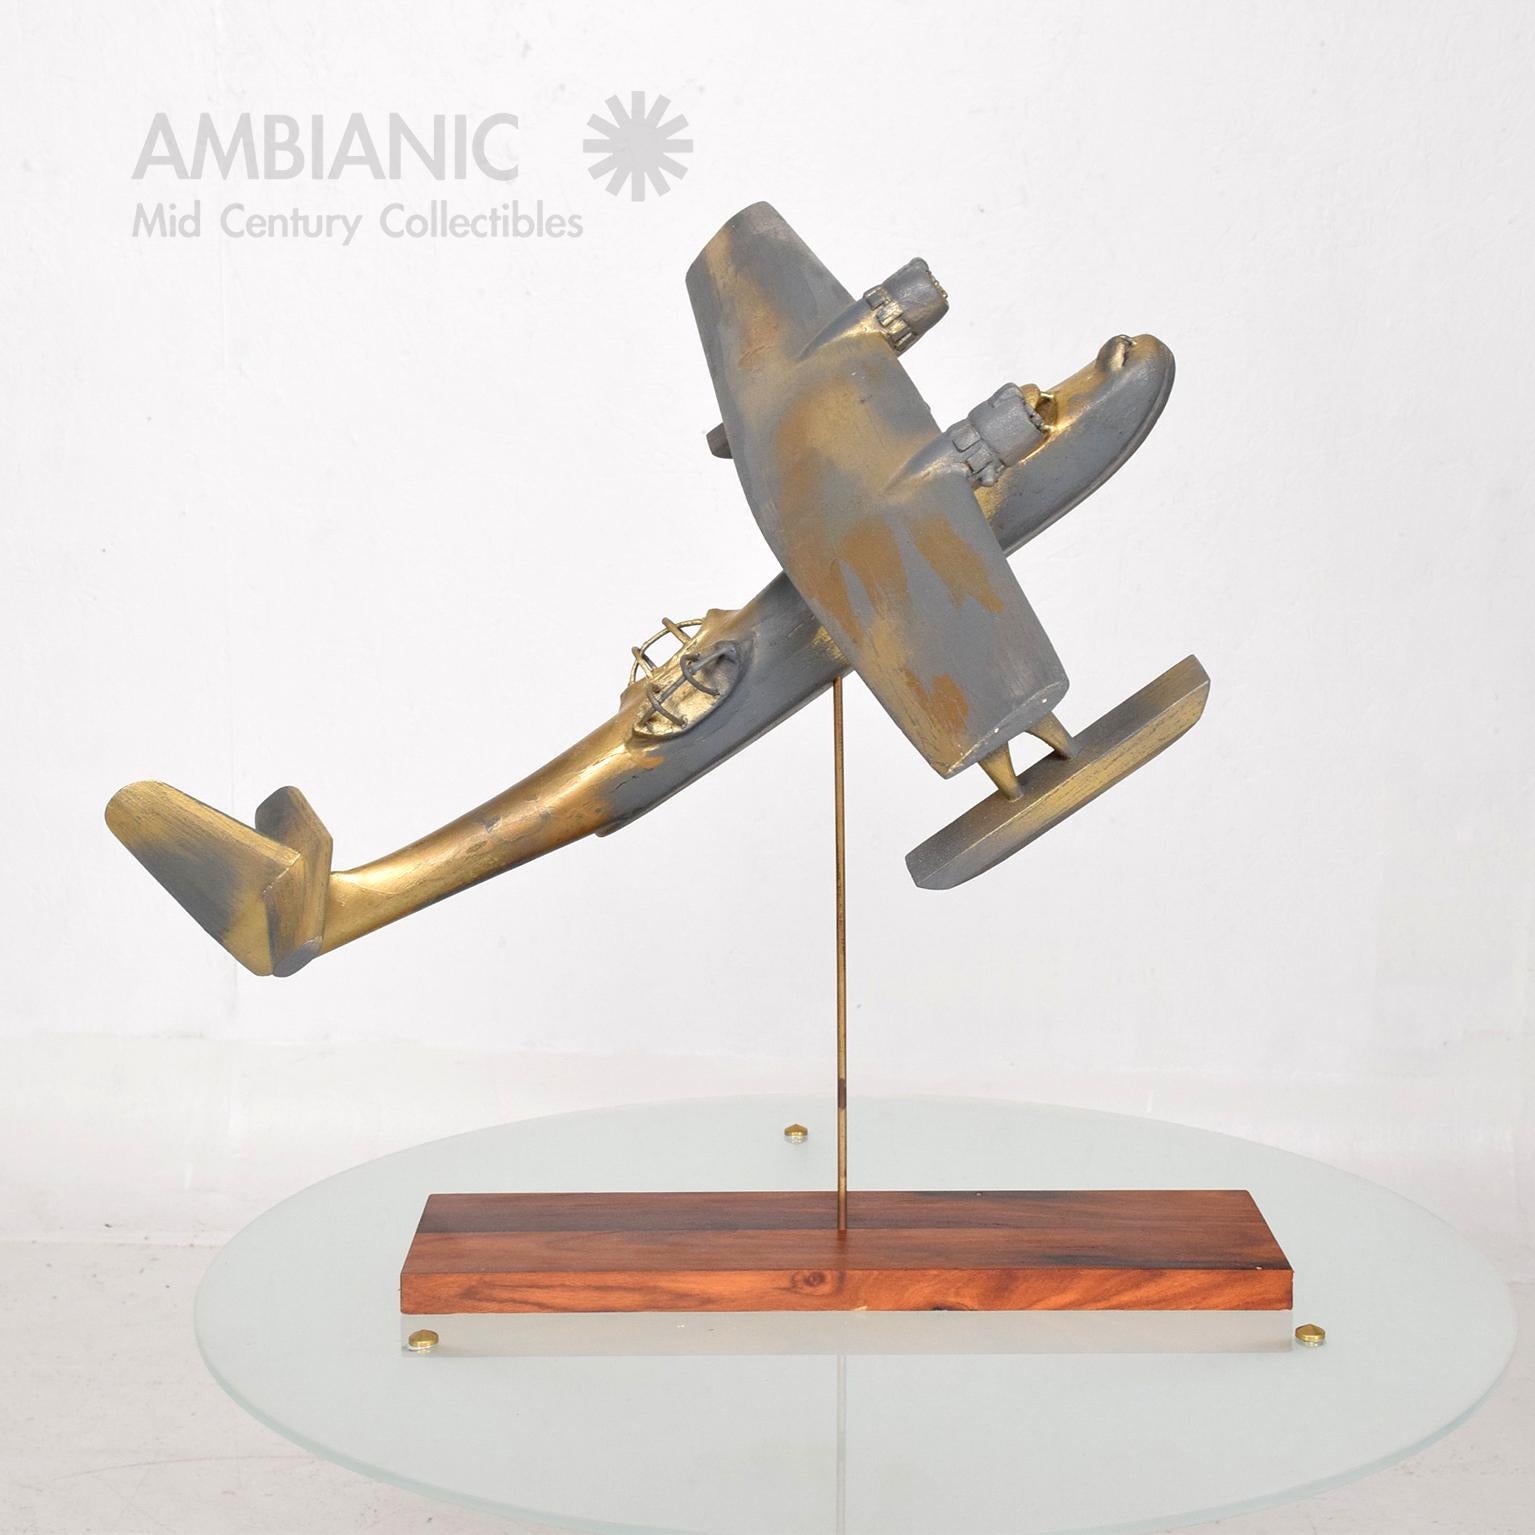 Flugzeug Kunst
Vintage WWII Holz Flugzeug Skulptur montiert auf einer Messingstange mit Palisanderholz Basis. Fabelhafte unechte Patina.
Keine Angaben zum Hersteller.
Abmessungen: 18 3/8